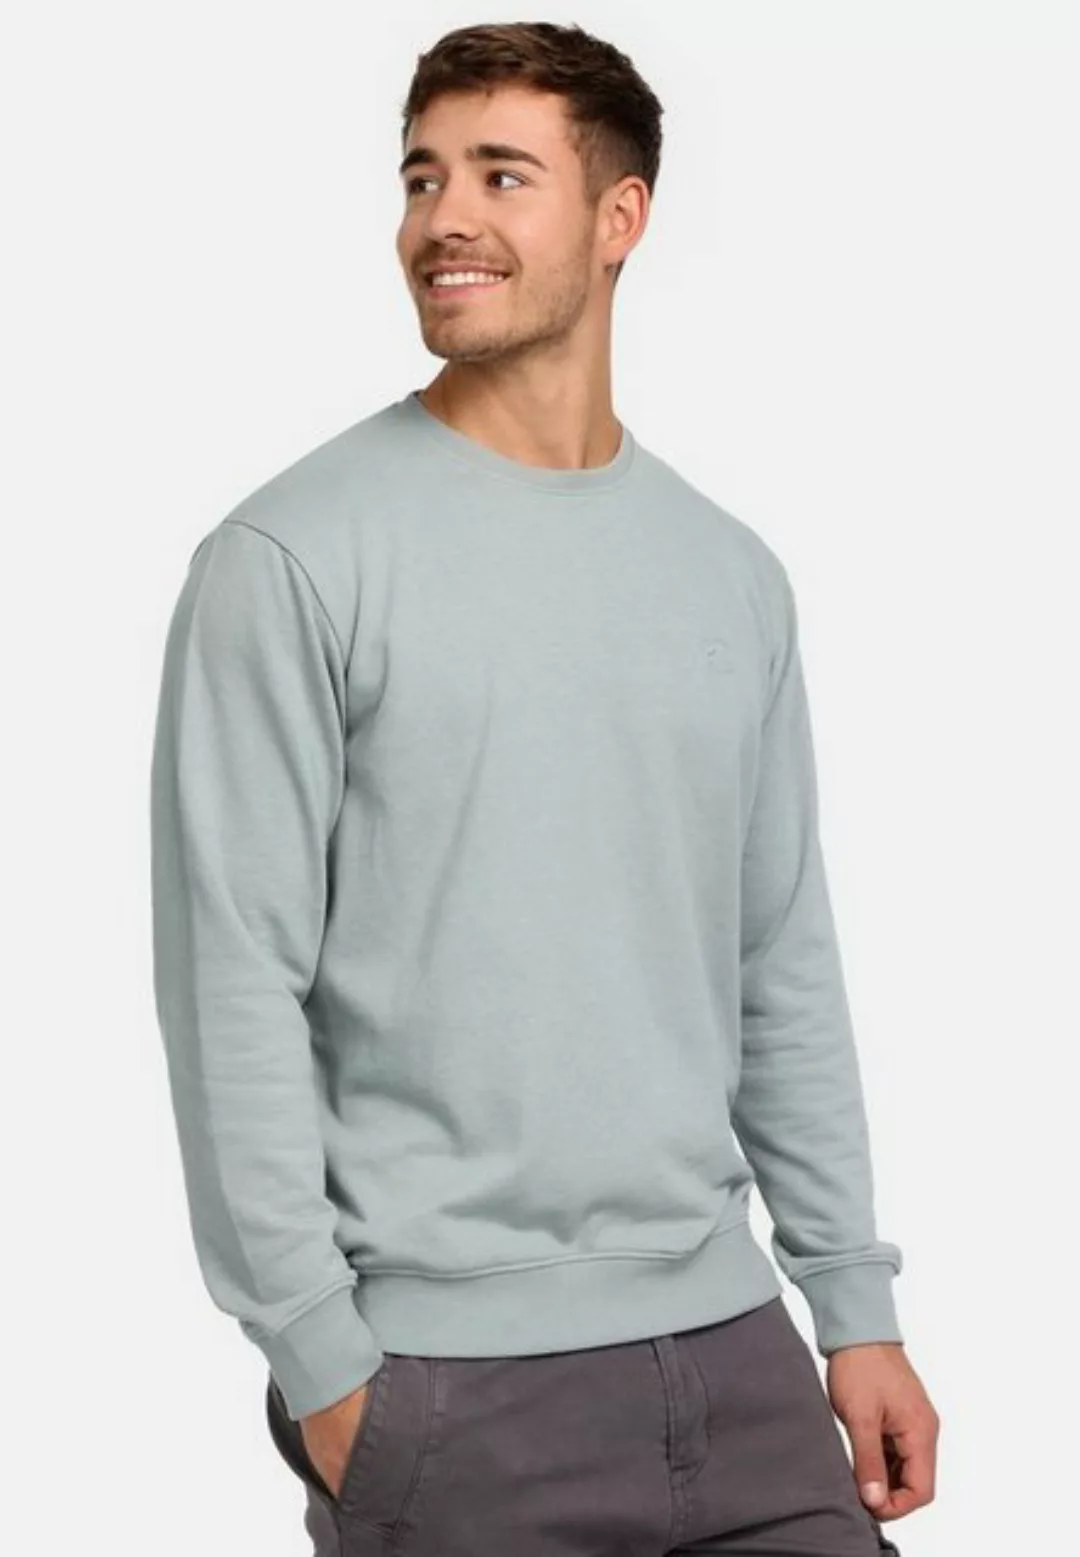 Indicode Sweater Holt günstig online kaufen